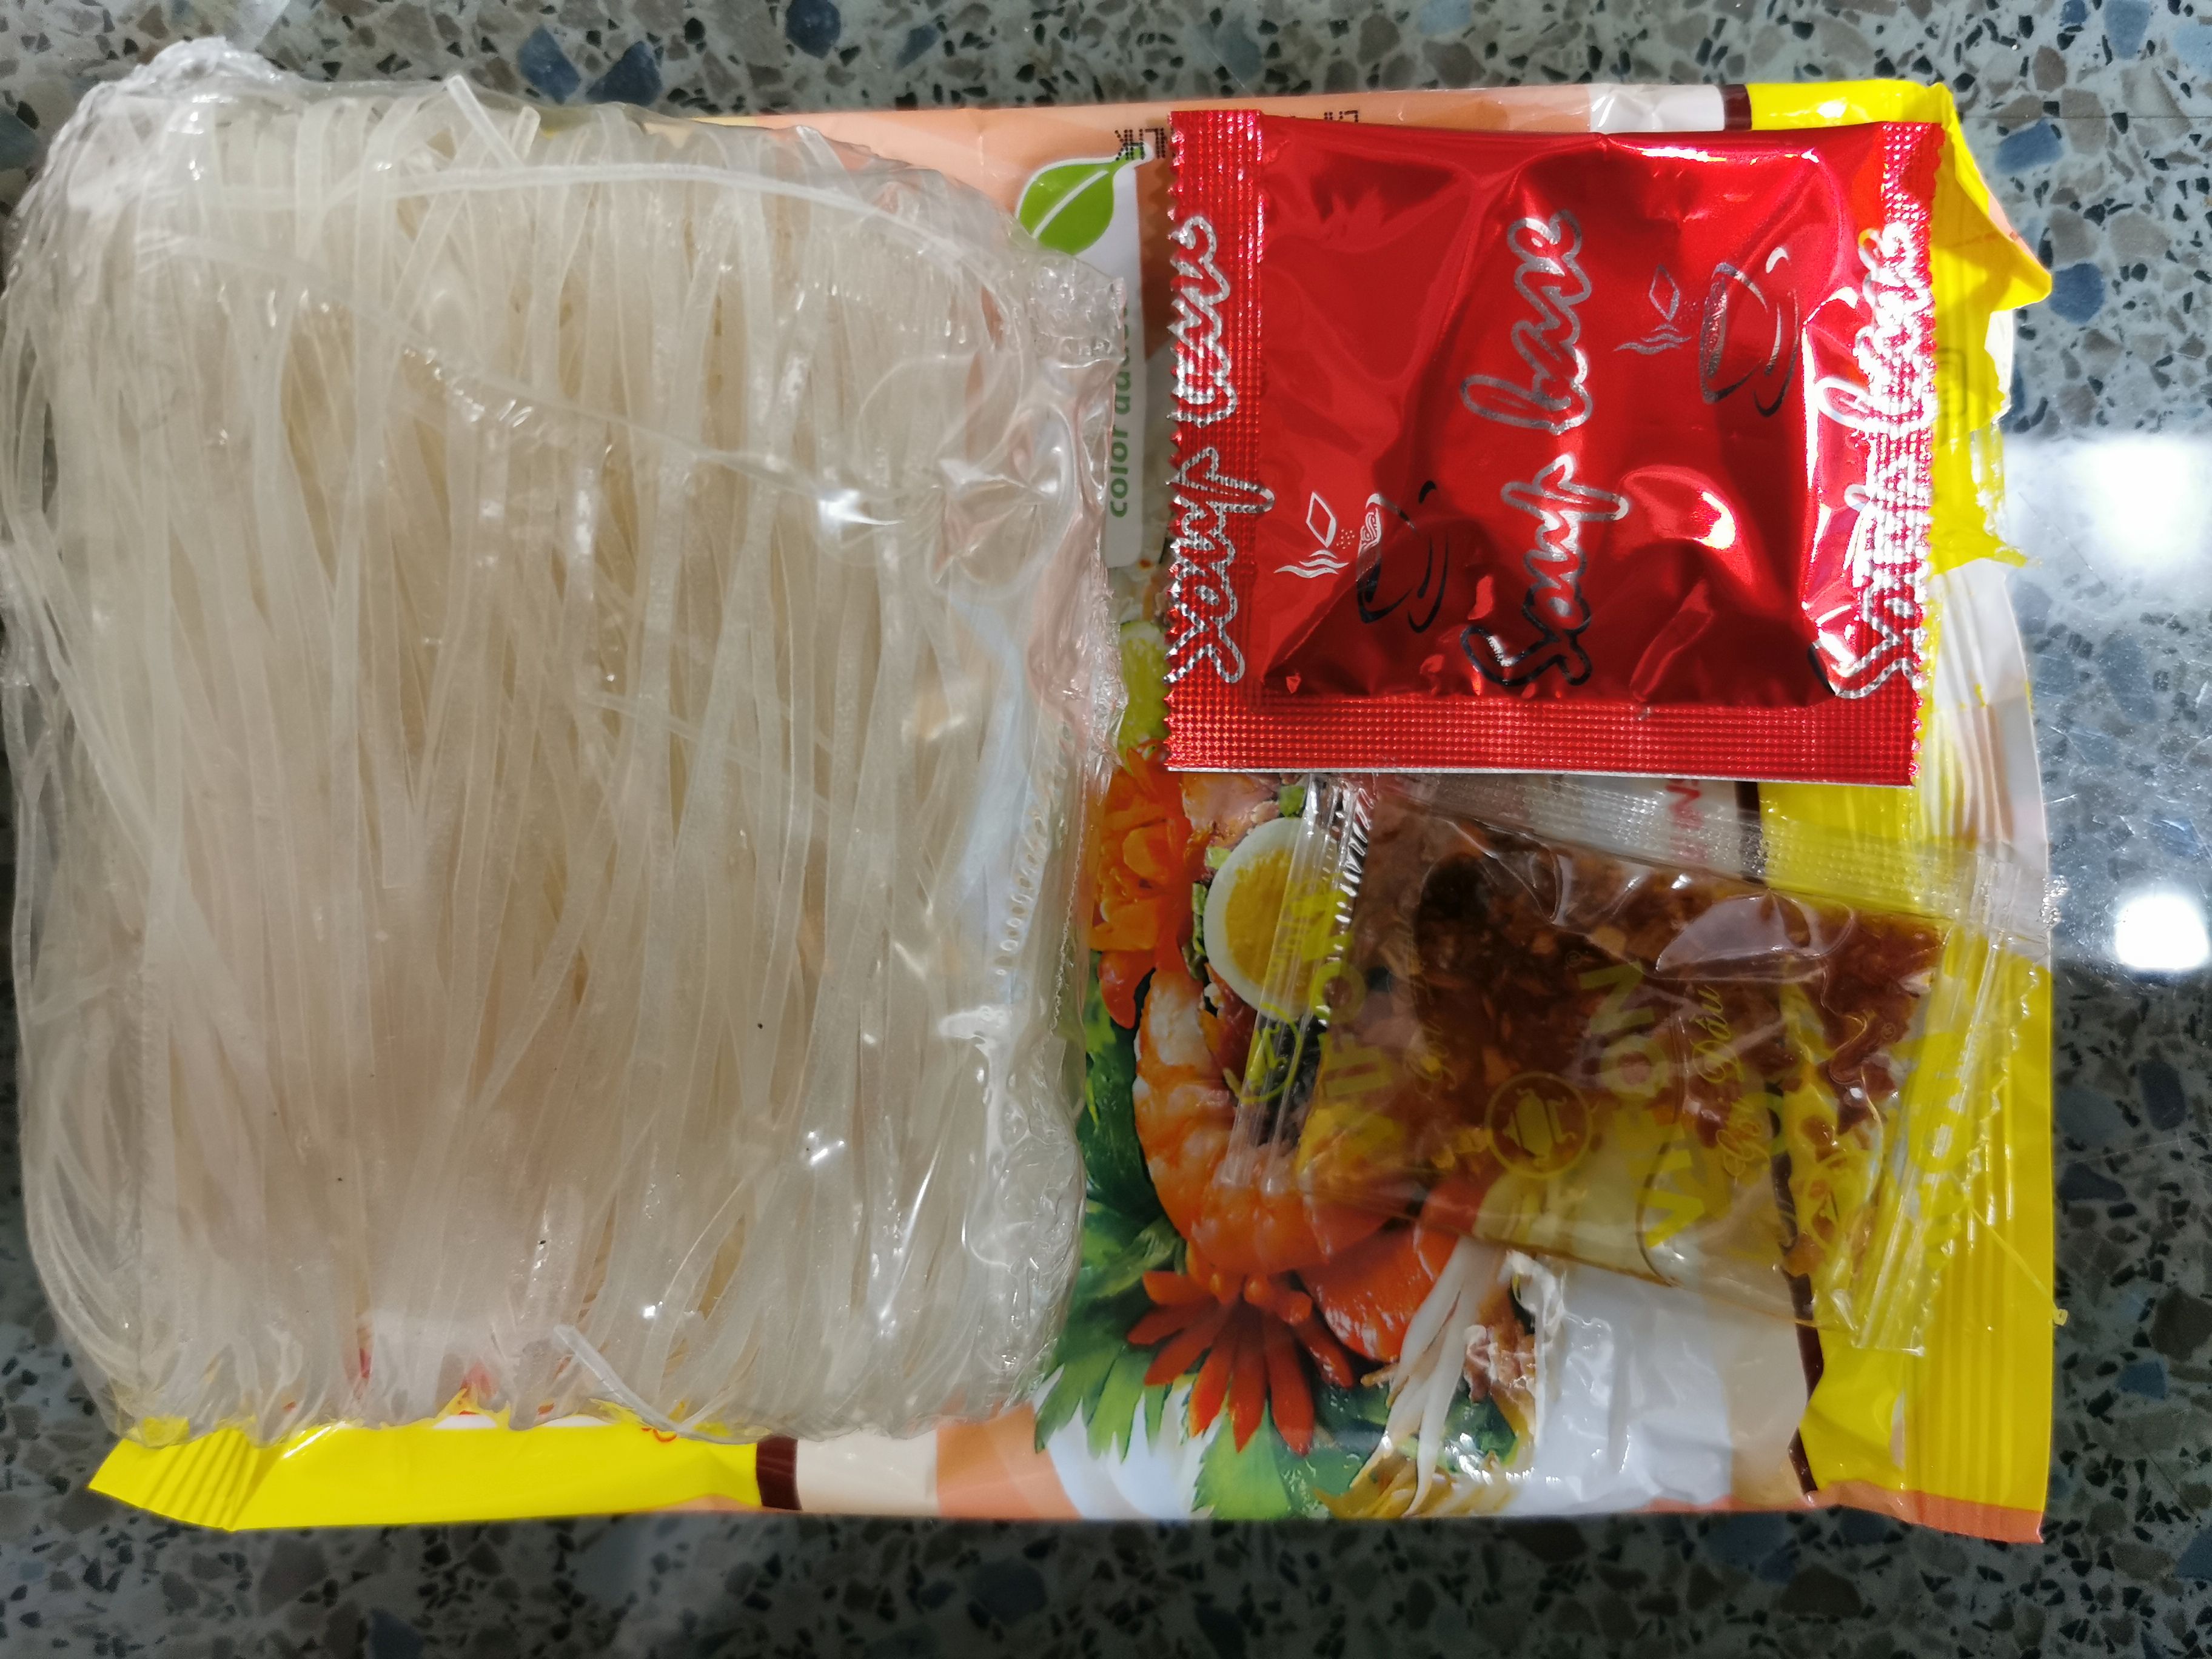 #2047: Vifon "Phnom Penh Oriental Style Instant Rice Noodles"